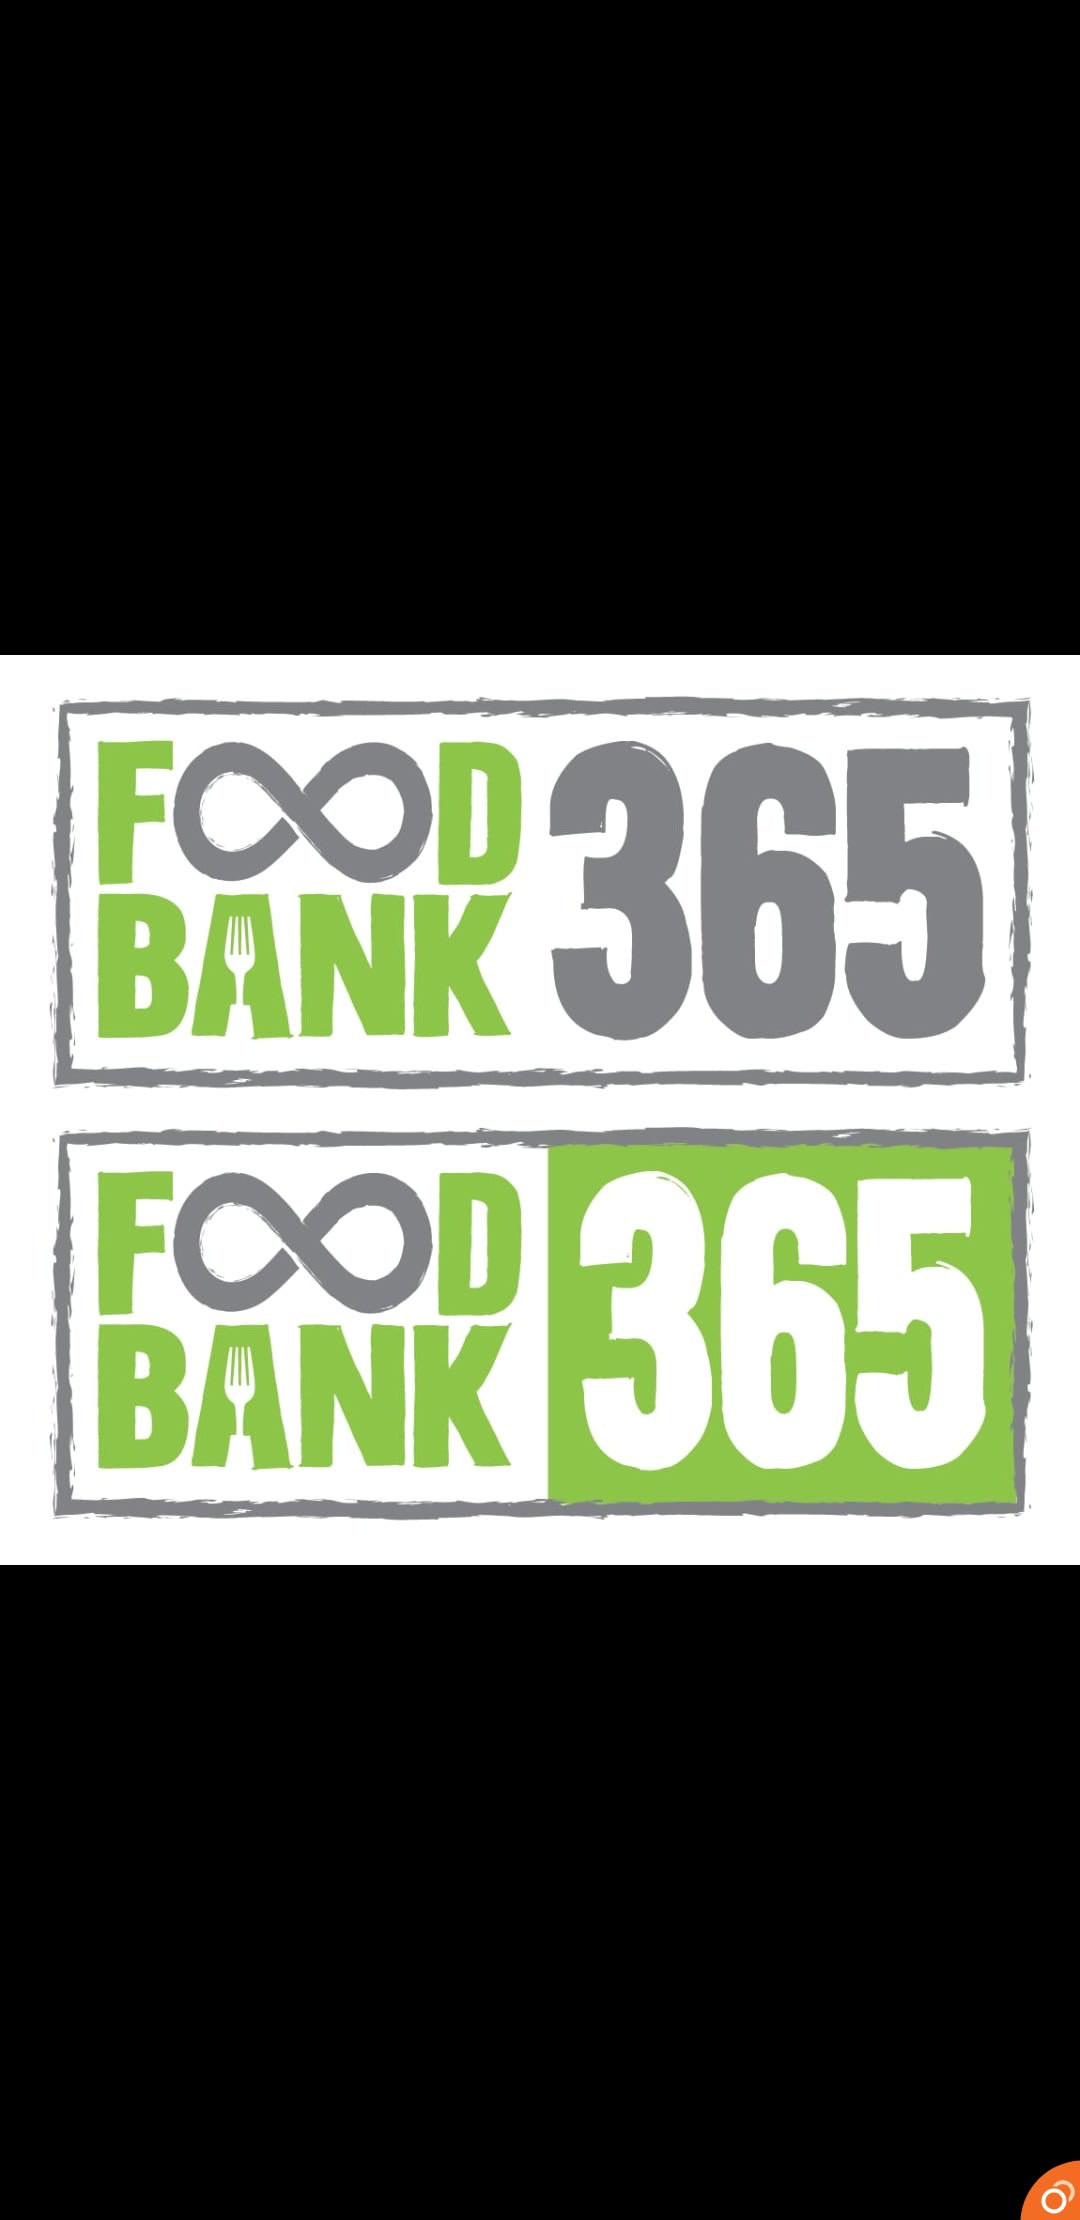 Foodbank365